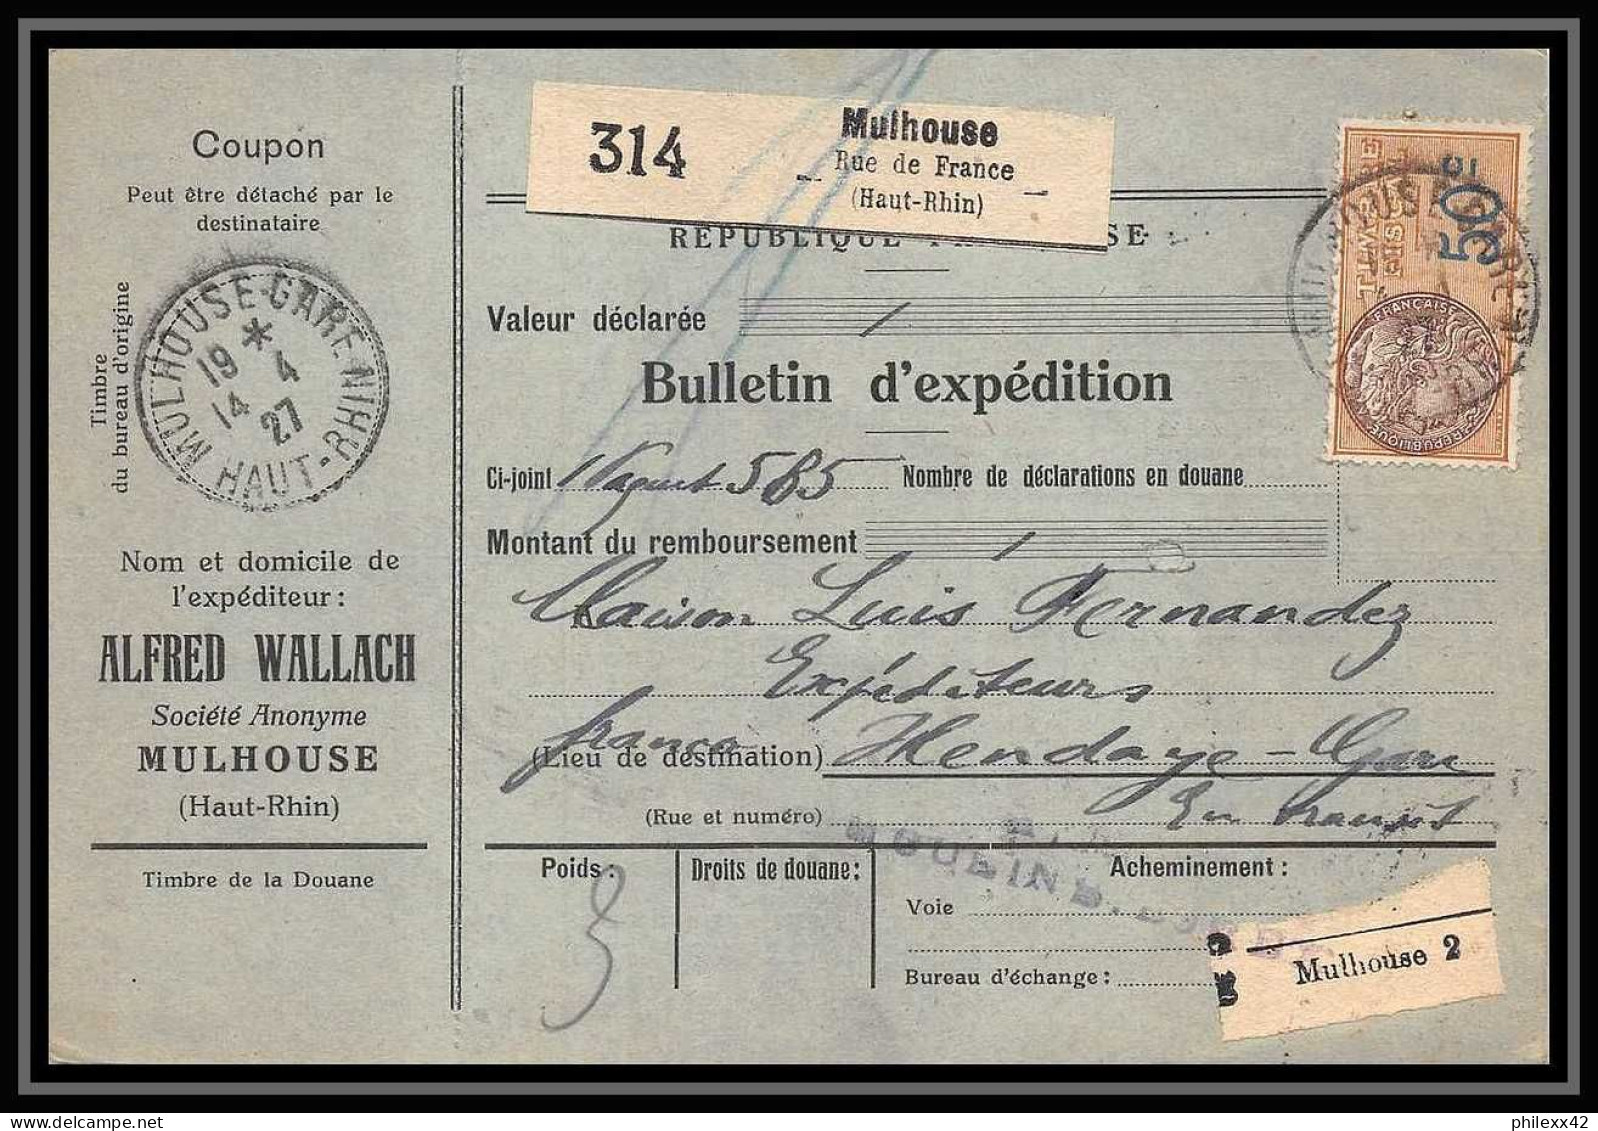 25056 Bulletin D'expédition France Colis Postaux Fiscal Haut Rhin - 1927 Mulhouse Merson 206 Alsace-Lorraine  - Lettres & Documents